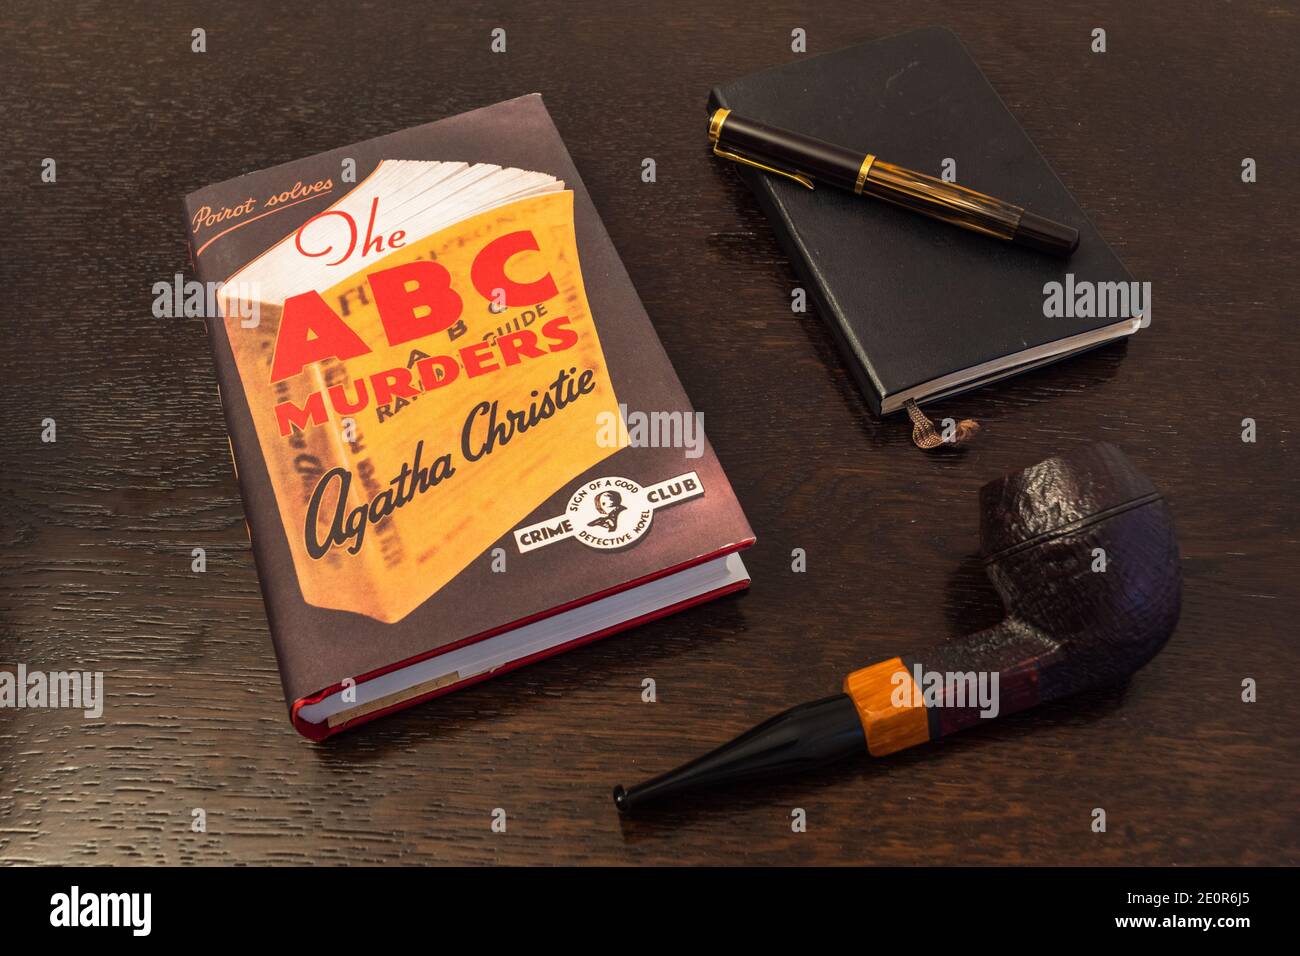 London, England, UK - 2. Januar 2021: Das ABC-Morde-Buch von Agatha Christie in einer Faksimile-Erstausgabe mit Tabakpfeife, Fountian Pen und Noteboo Stockfoto